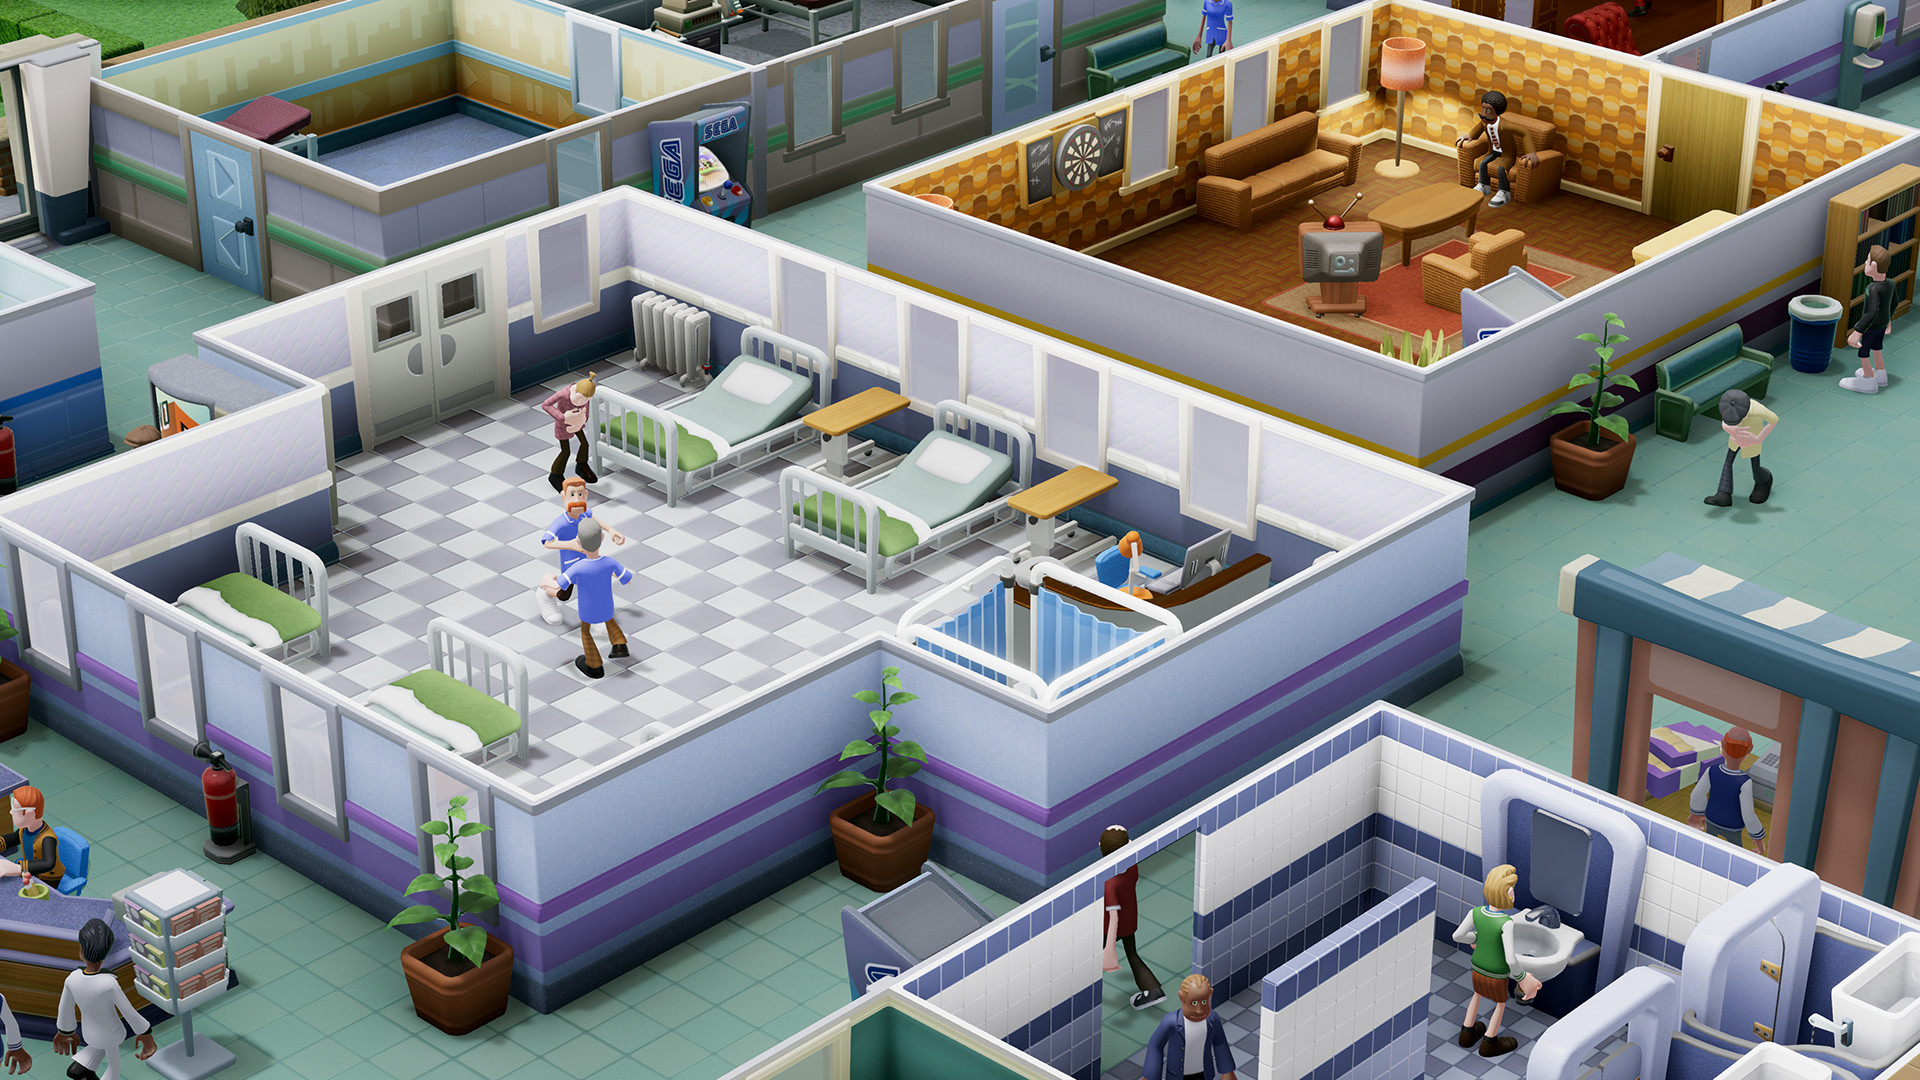 Theme Hospital #02 - Jogos Antigos - Um hospital muito louco! 